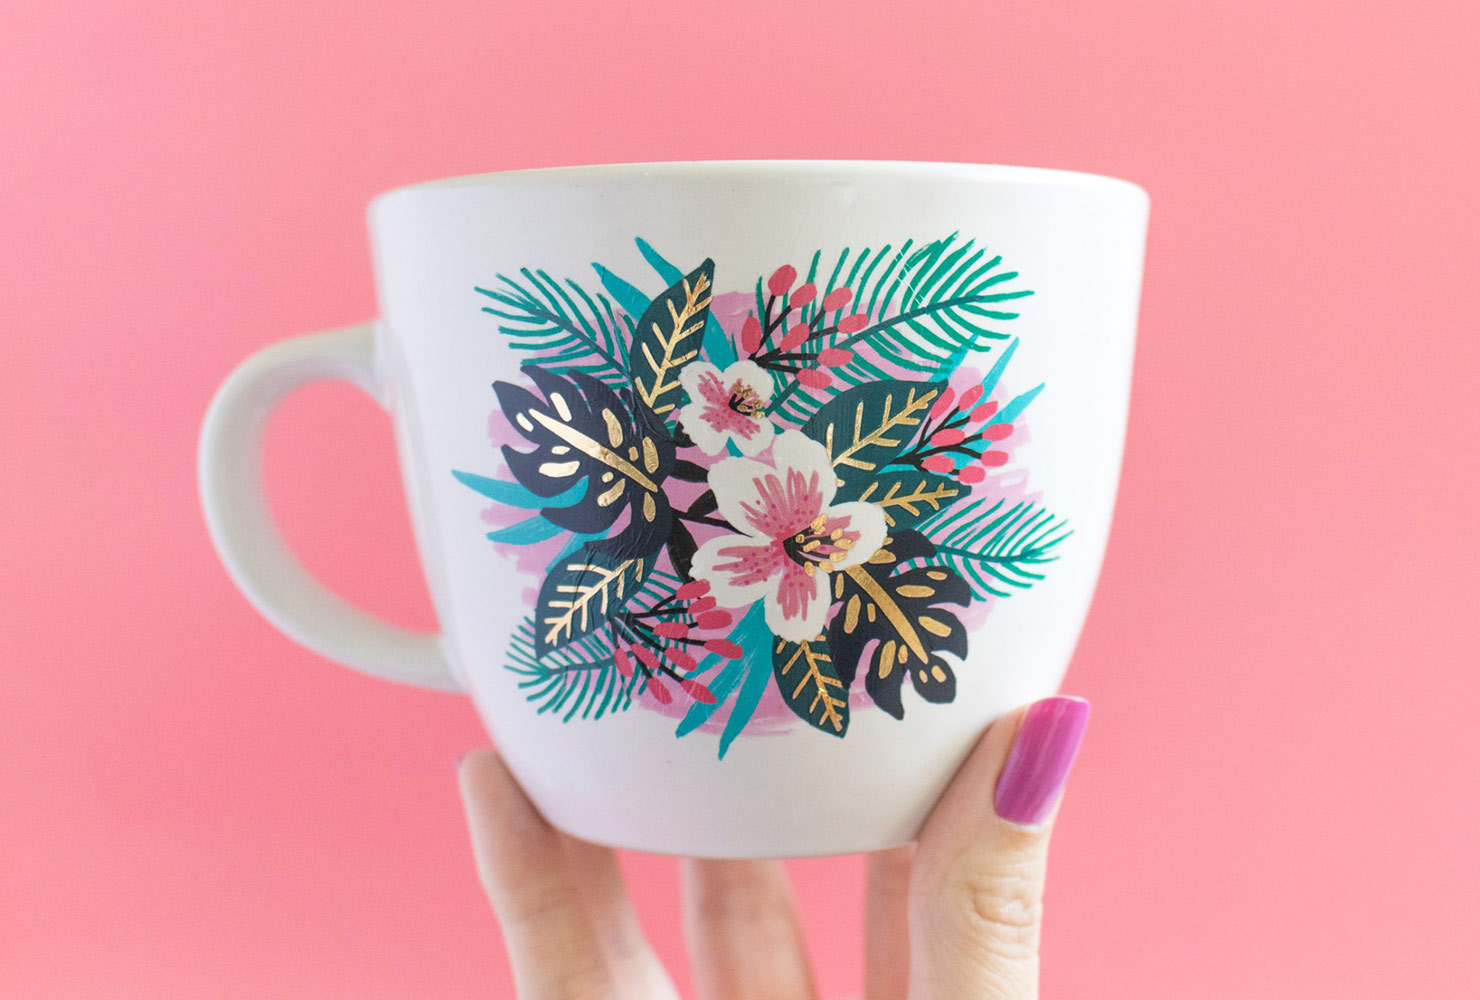 mug with floral design